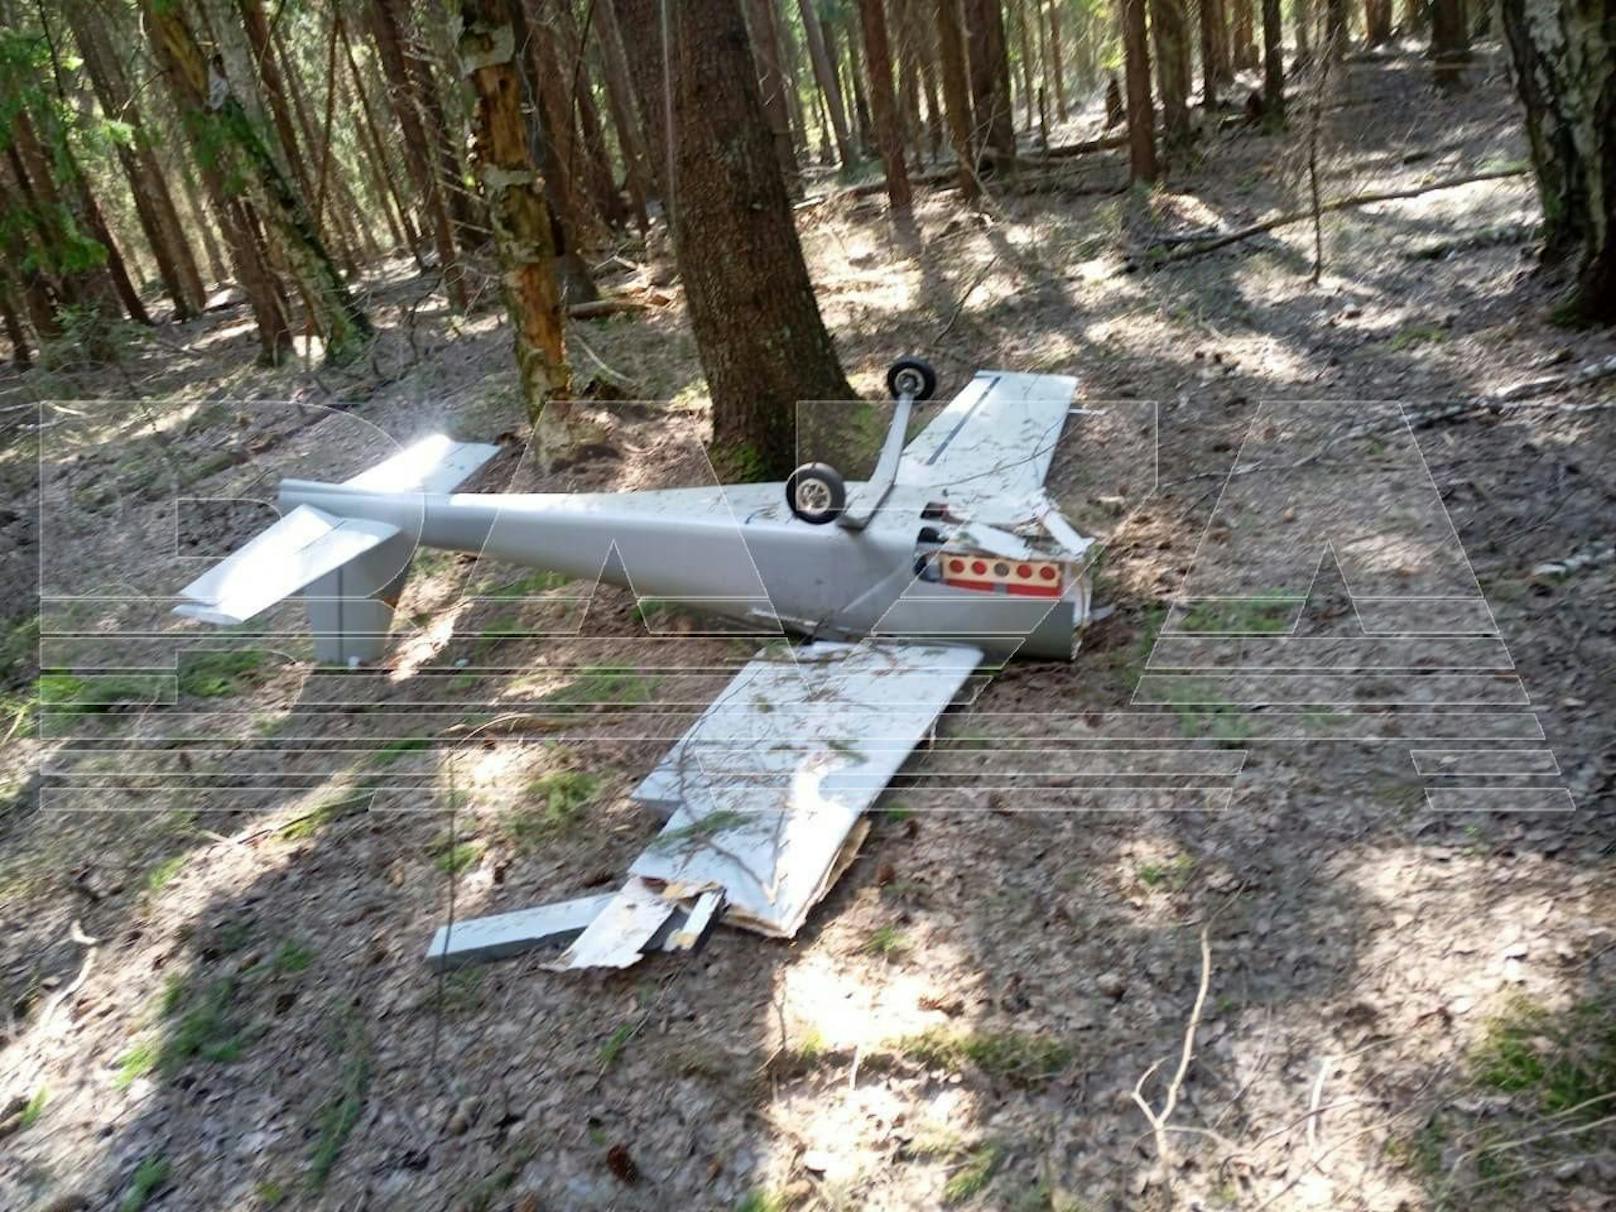 Mit dieser Drohne und knapp 17 Kilogramm Sprengstoff wollte die Ukraine ein Attentat auf Putin verüben. 